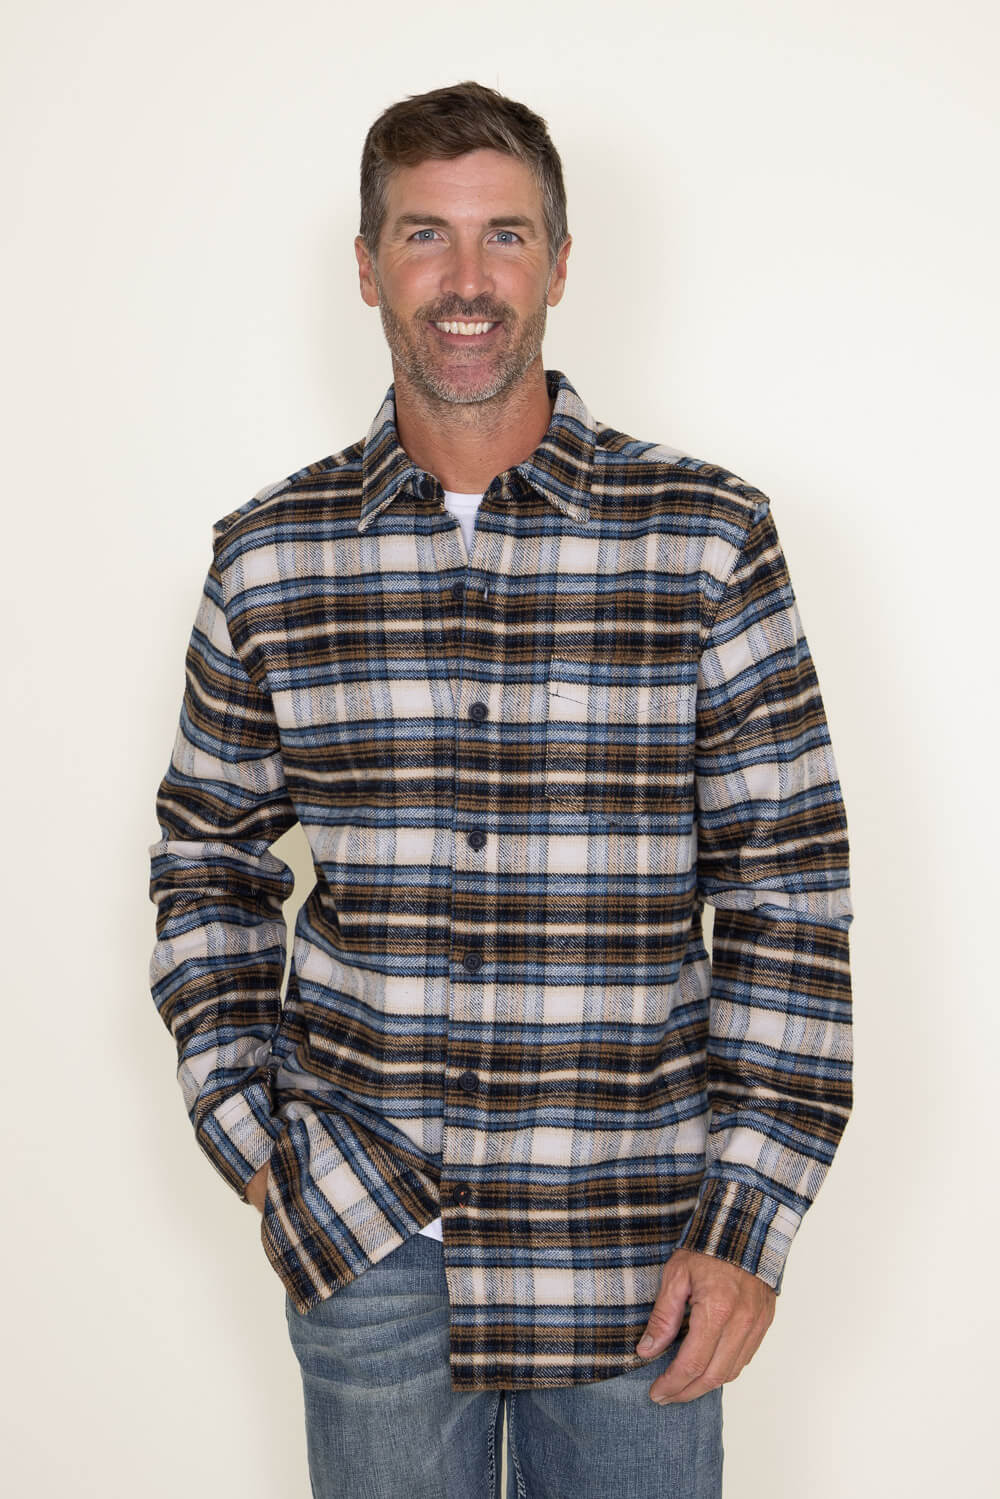 Weatherproof Vintage Flannel Shirt for Men in Orange at Glik's , L